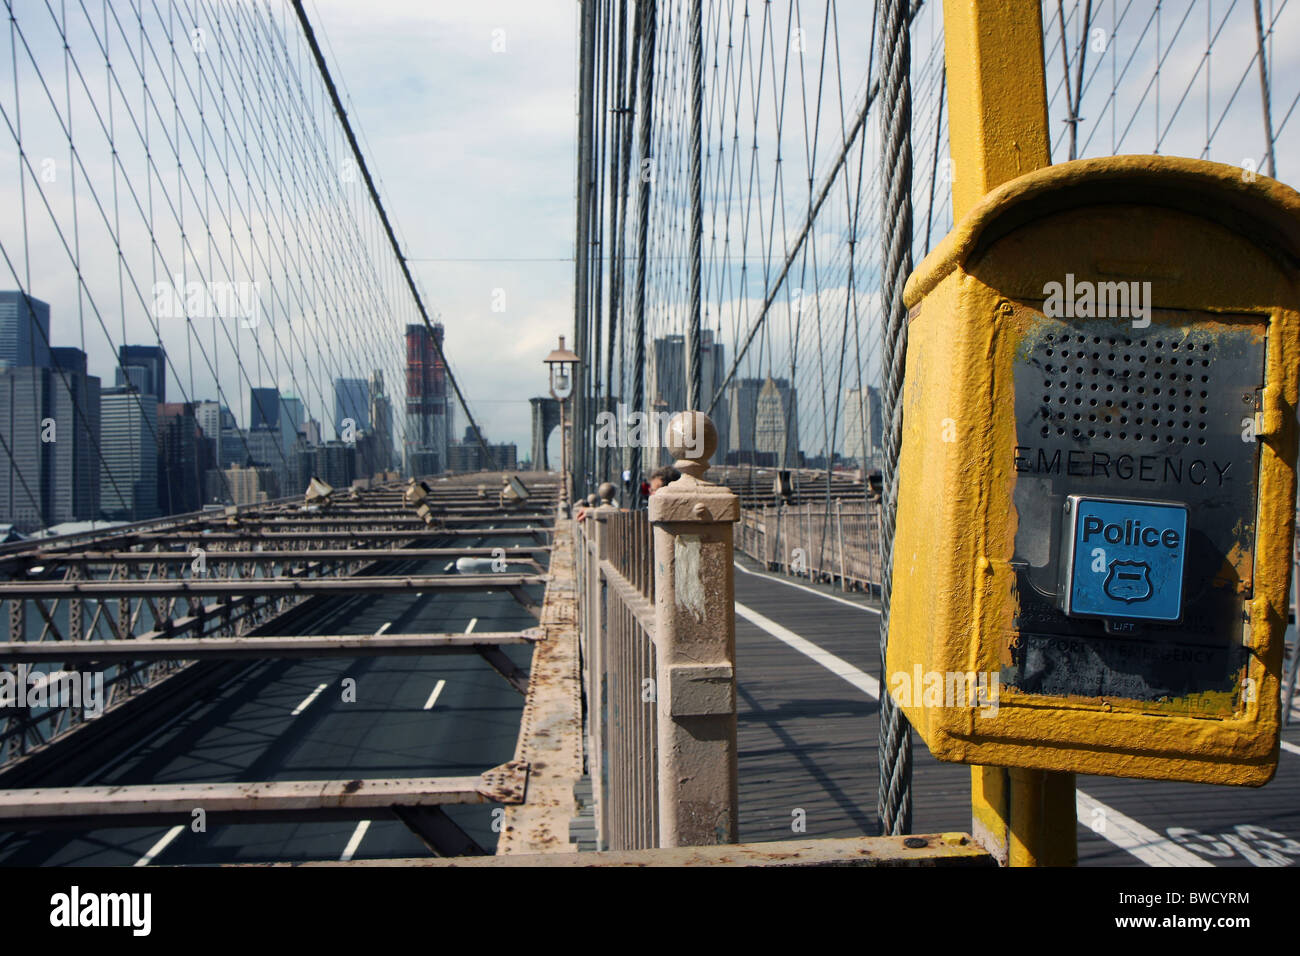 Vista del puente de Brooklyn en Nueva York y una herramienta llamada de emergencia de la policía Foto de stock